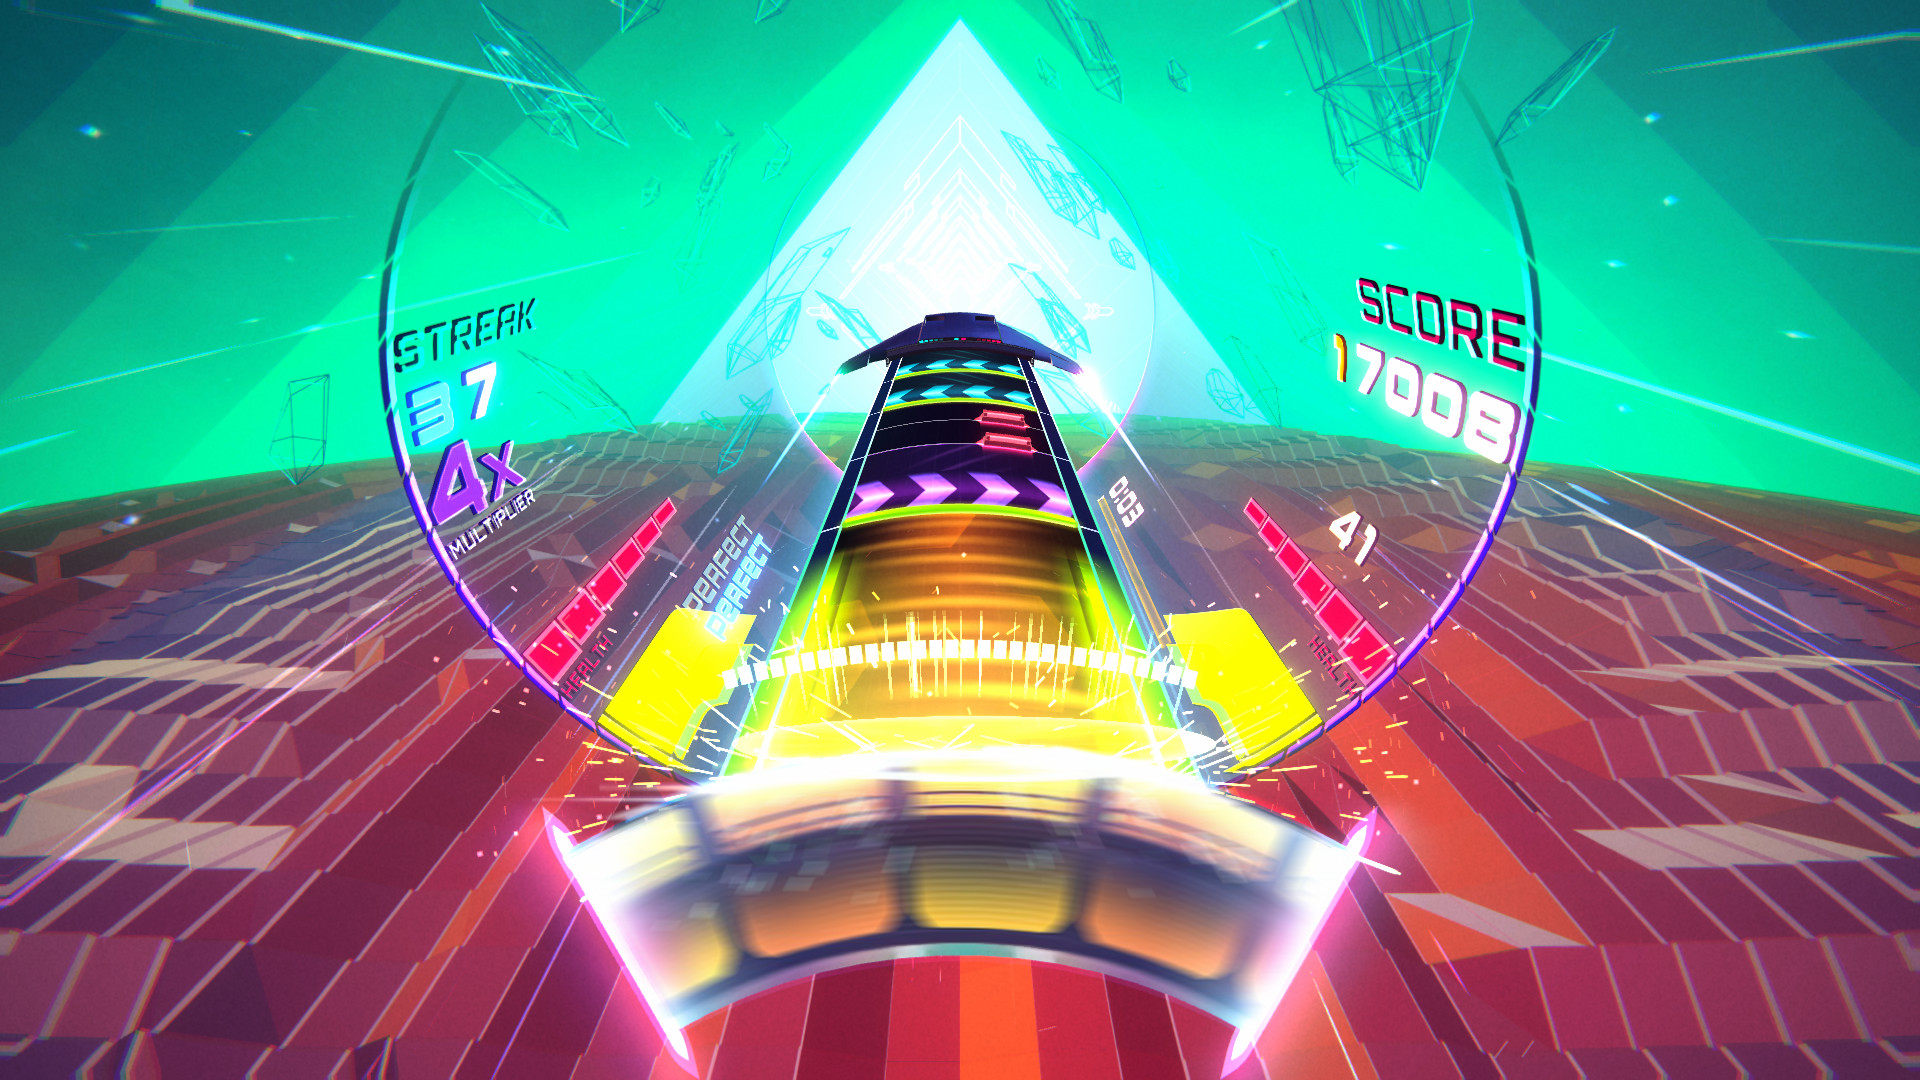 Spin Rhythm XD (PC) é um empolgante jogo de ritmo com mecânicas únicas -  GameBlast